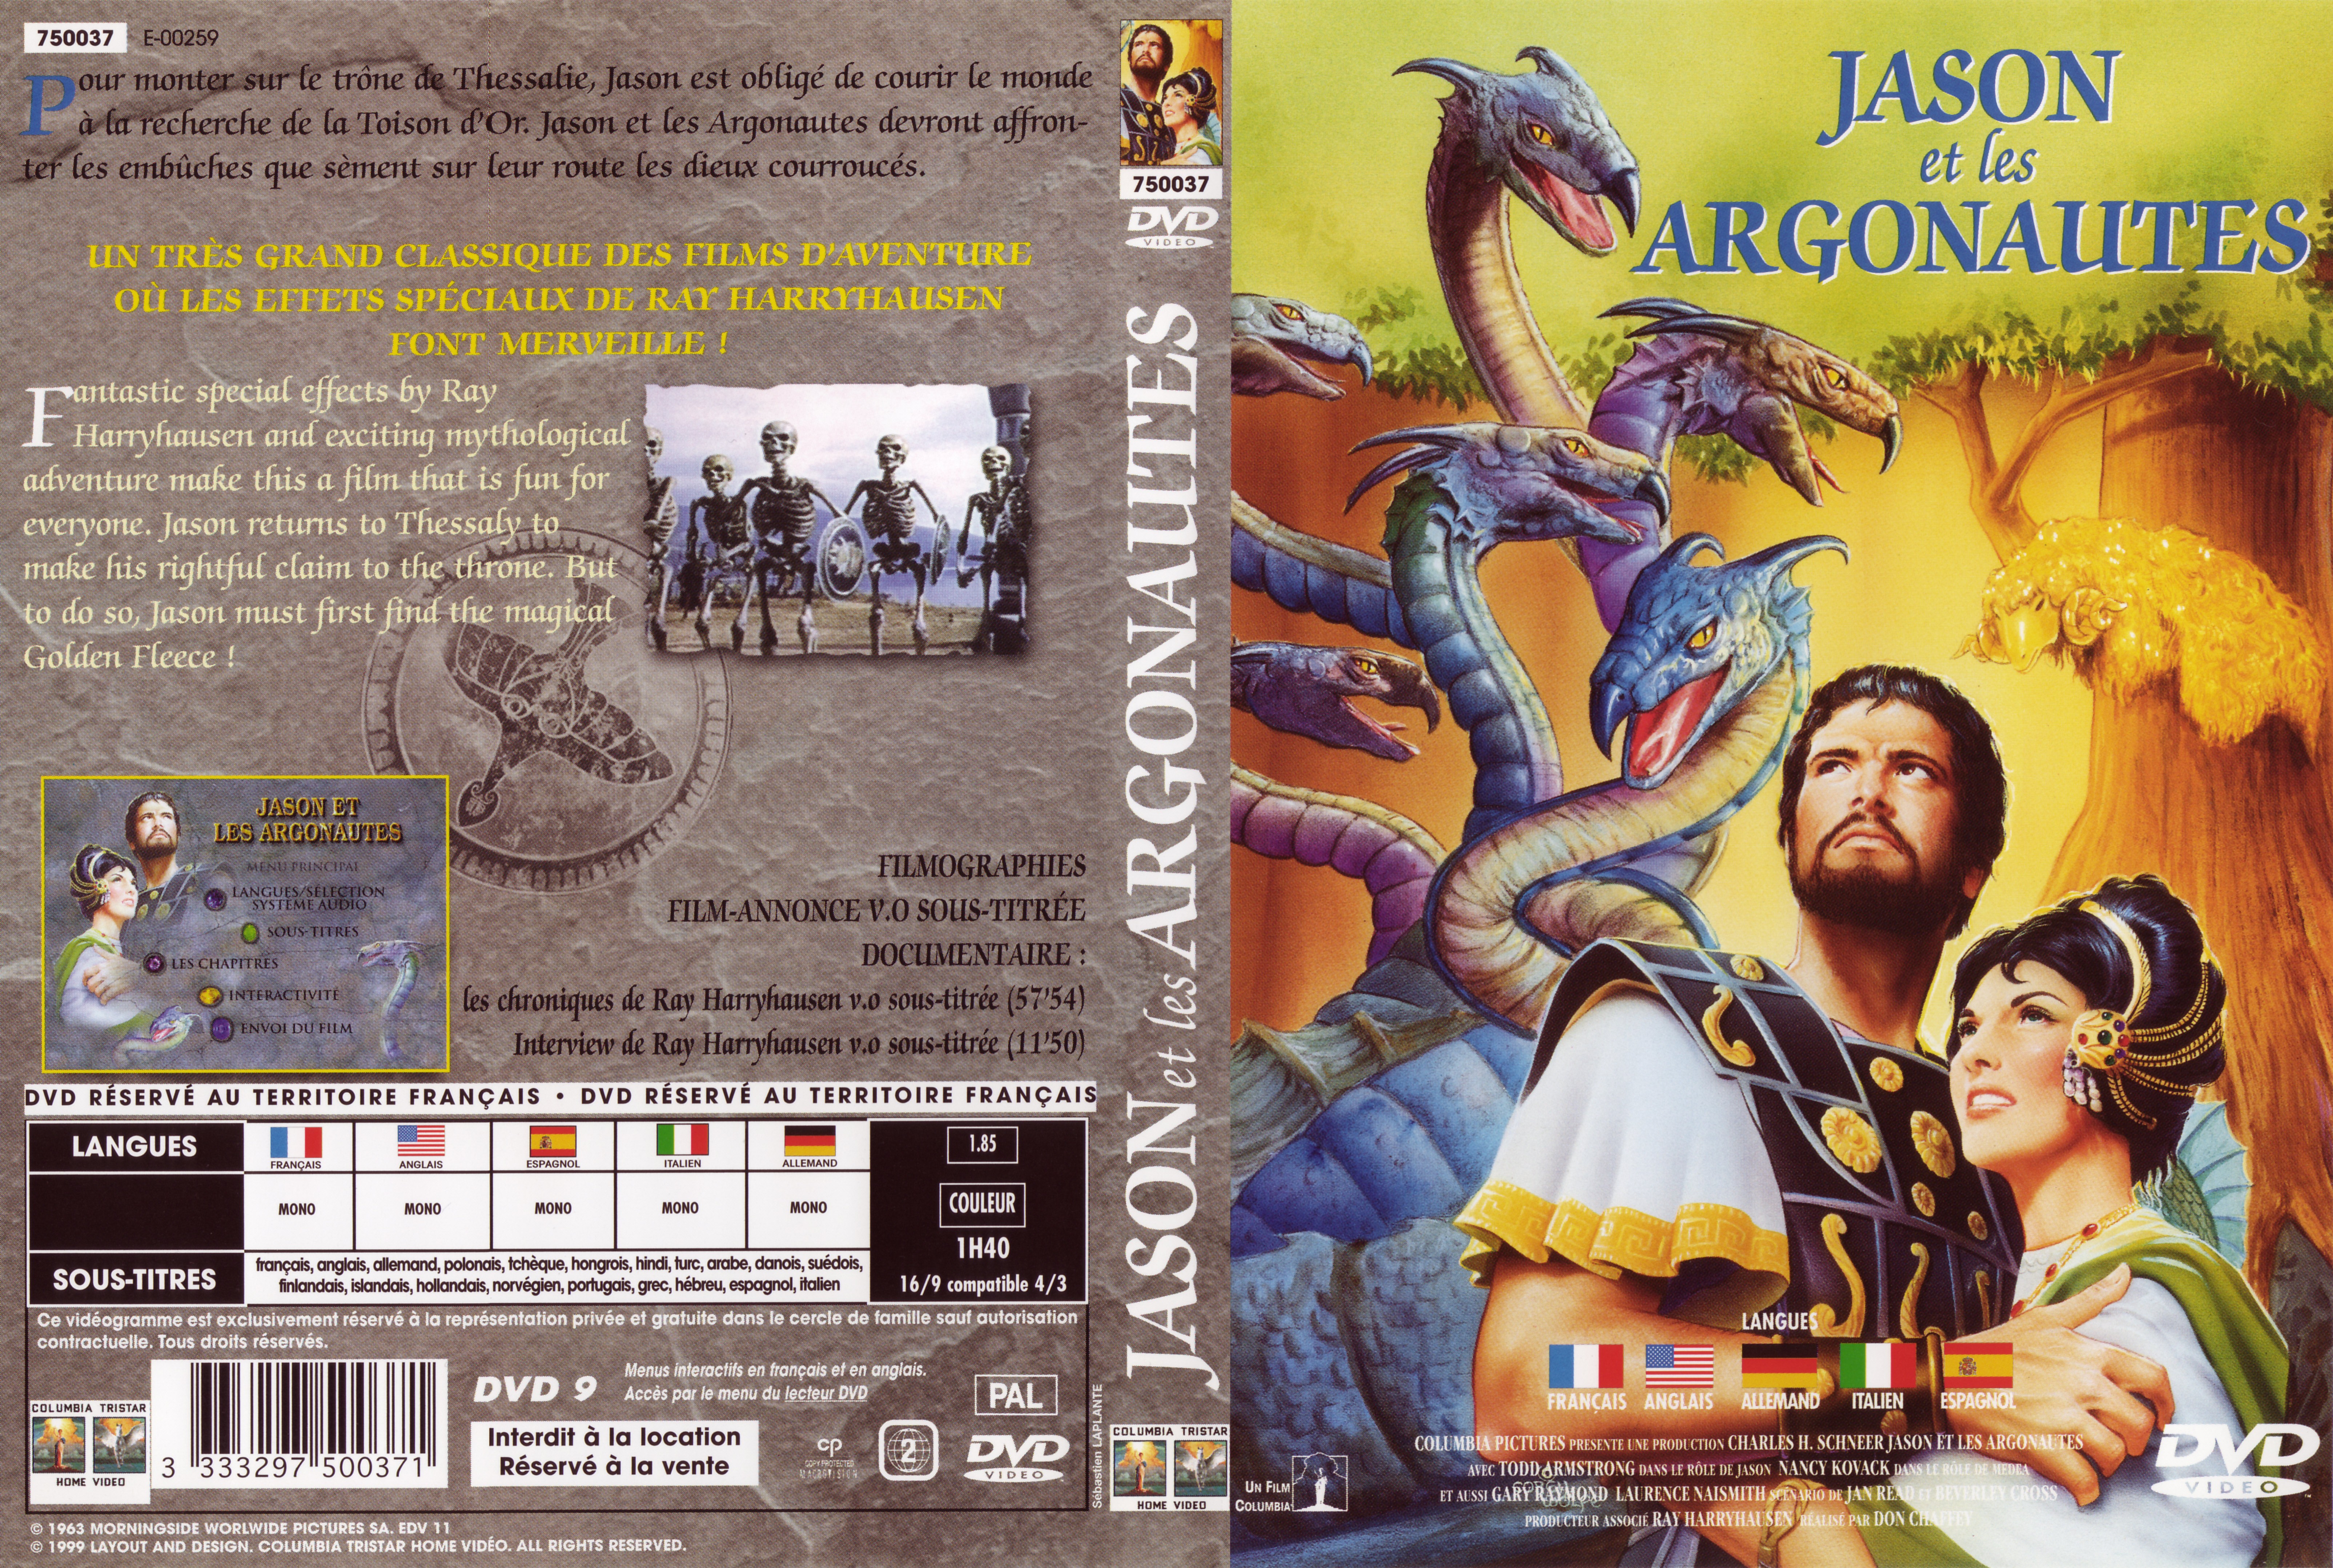 Jaquette DVD Jason et les argonautes